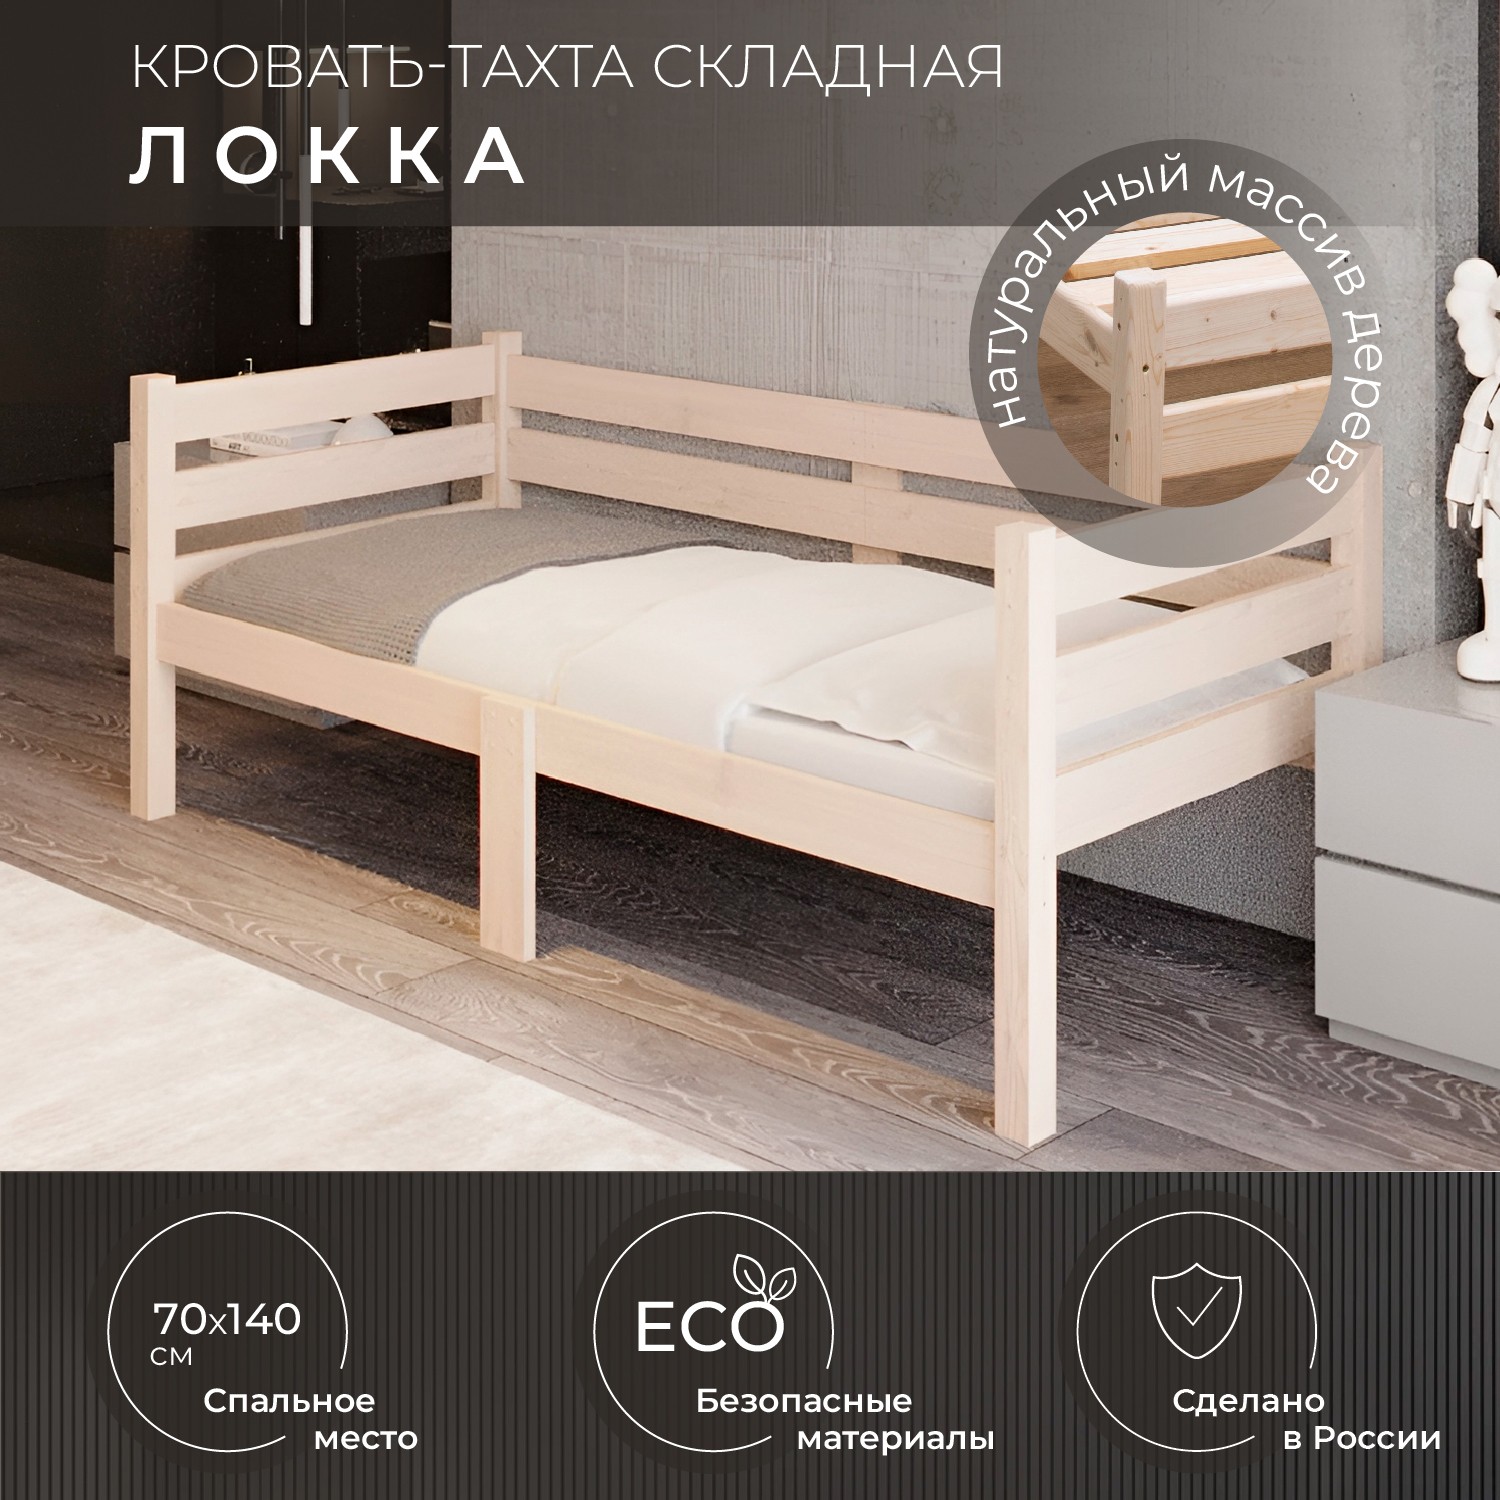 Кровать односпальная Новирон Локка 70х140 см складная бежевый